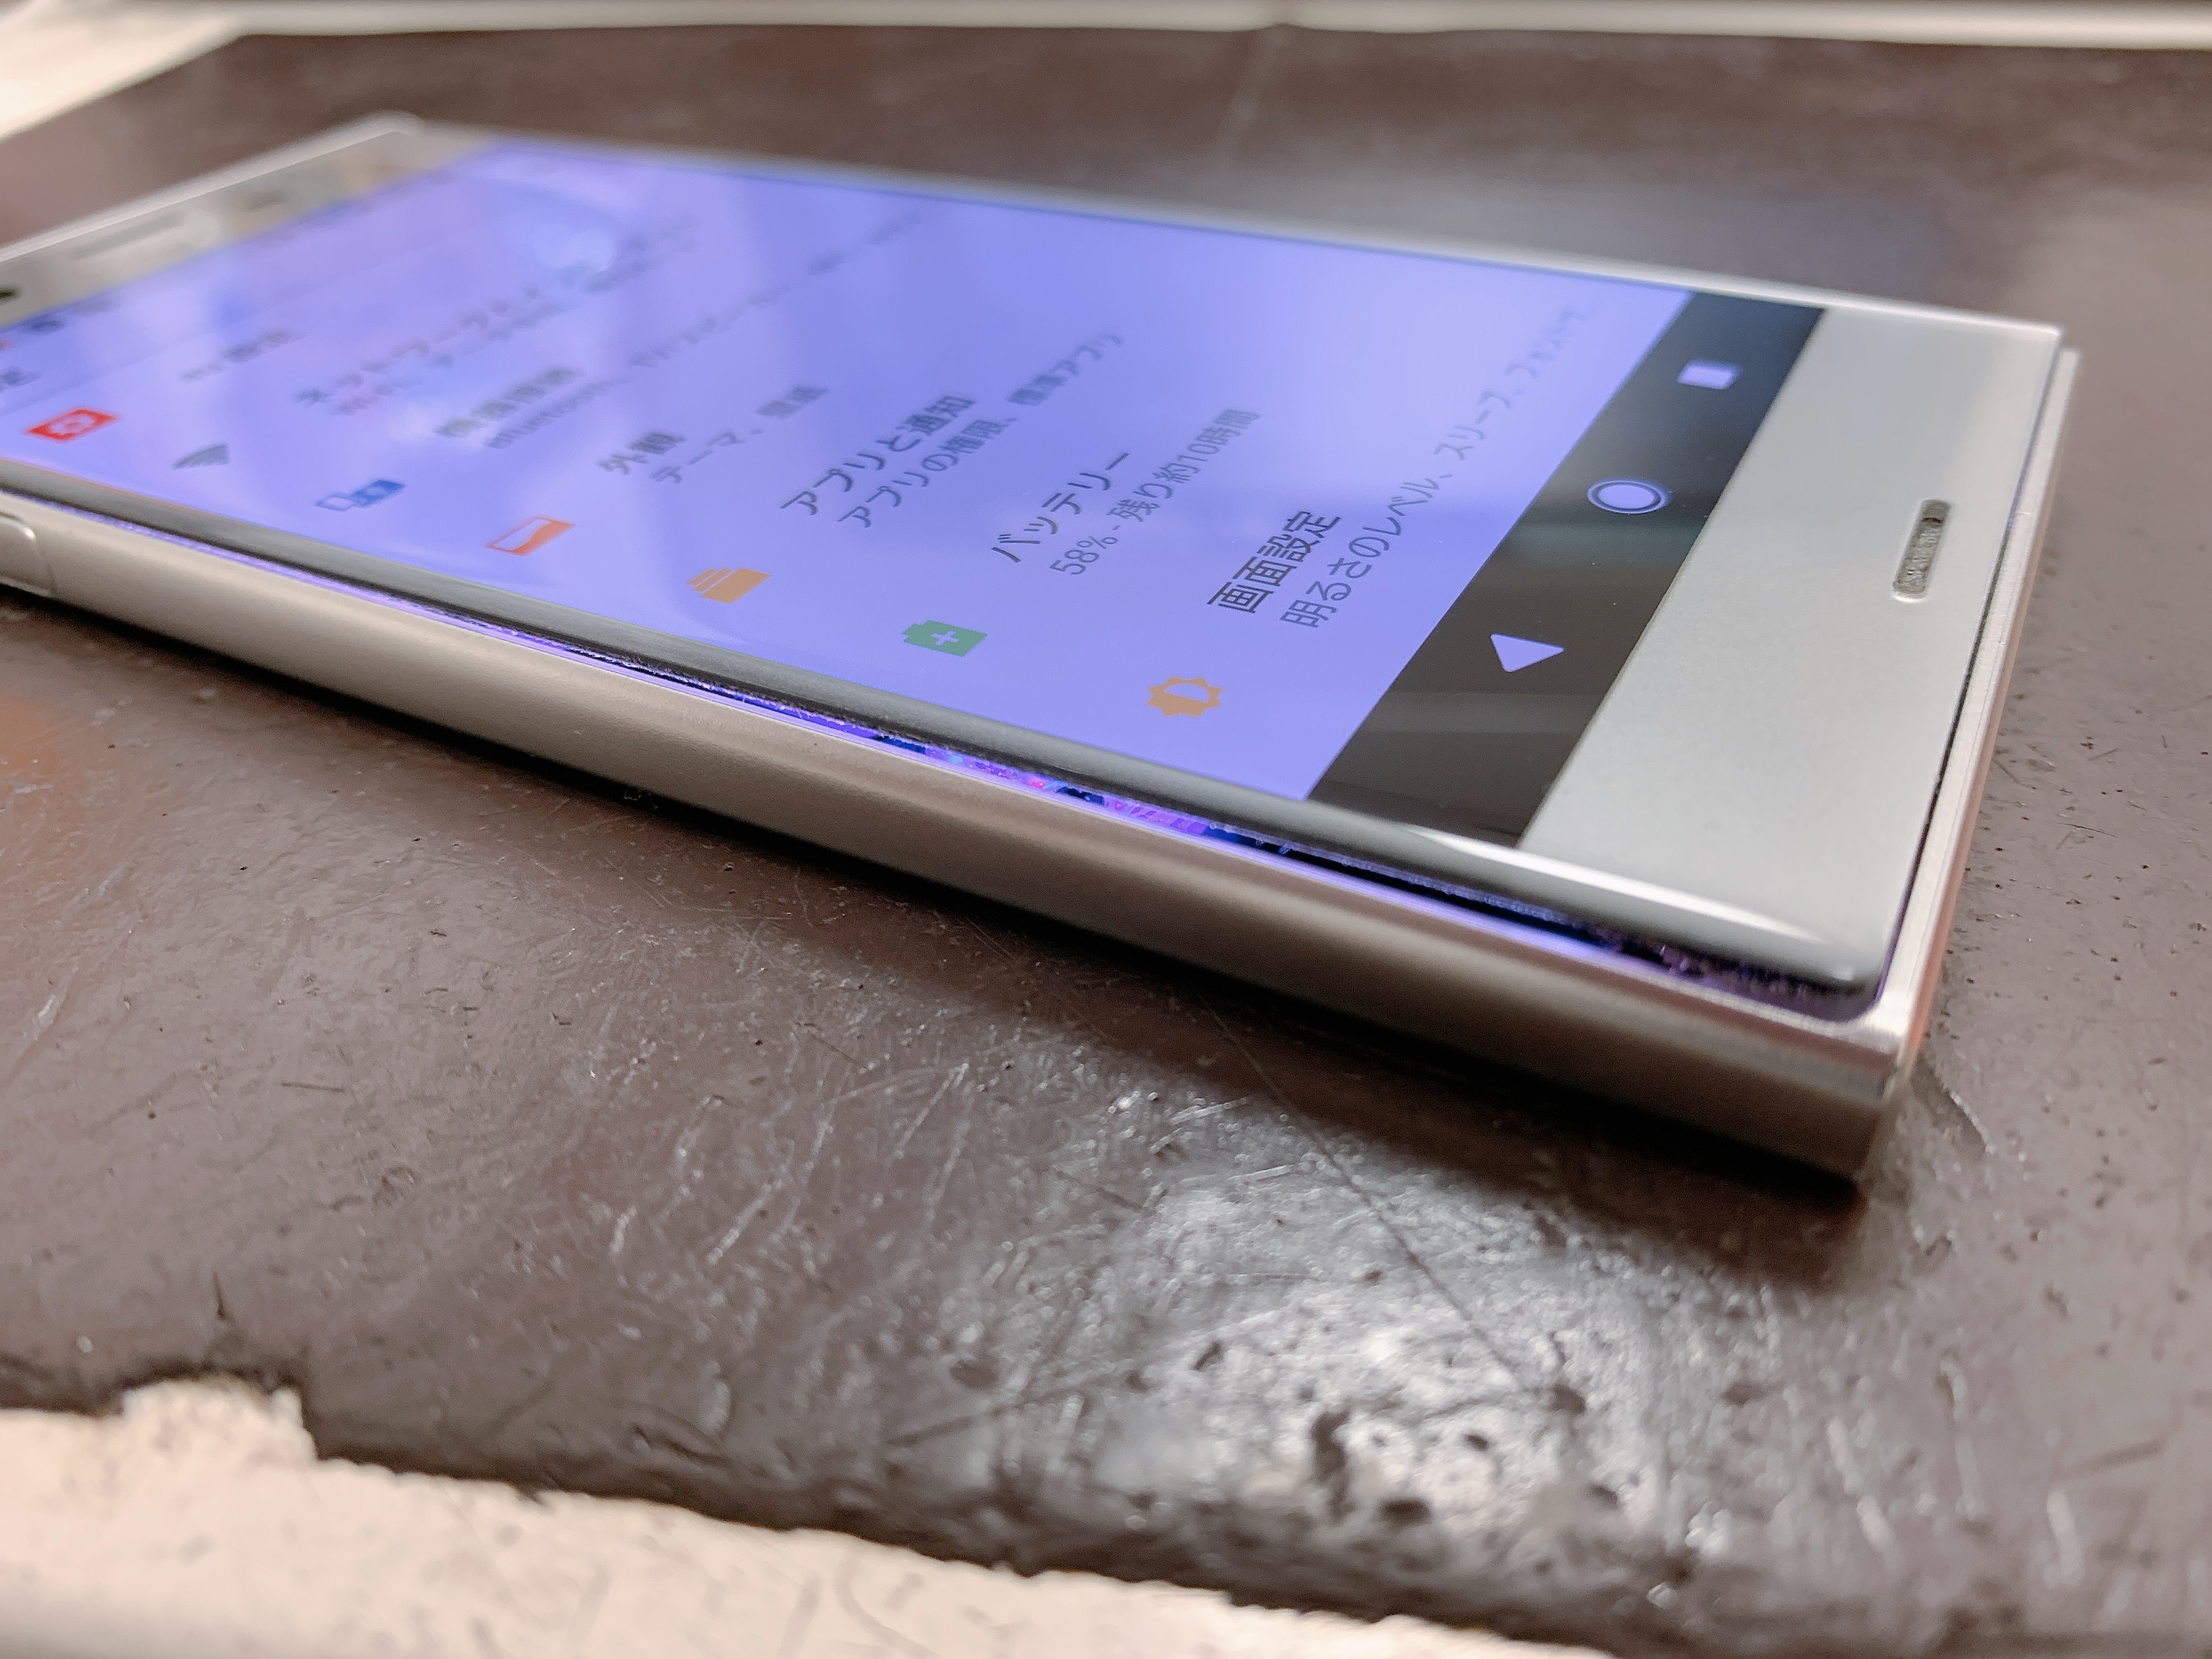 バッテリーが膨張した時のng行為や危険性は 対処方法をご紹介 Xperia Galaxy Zenfone Huawei Nexus修理のアンドロイドホスピタル